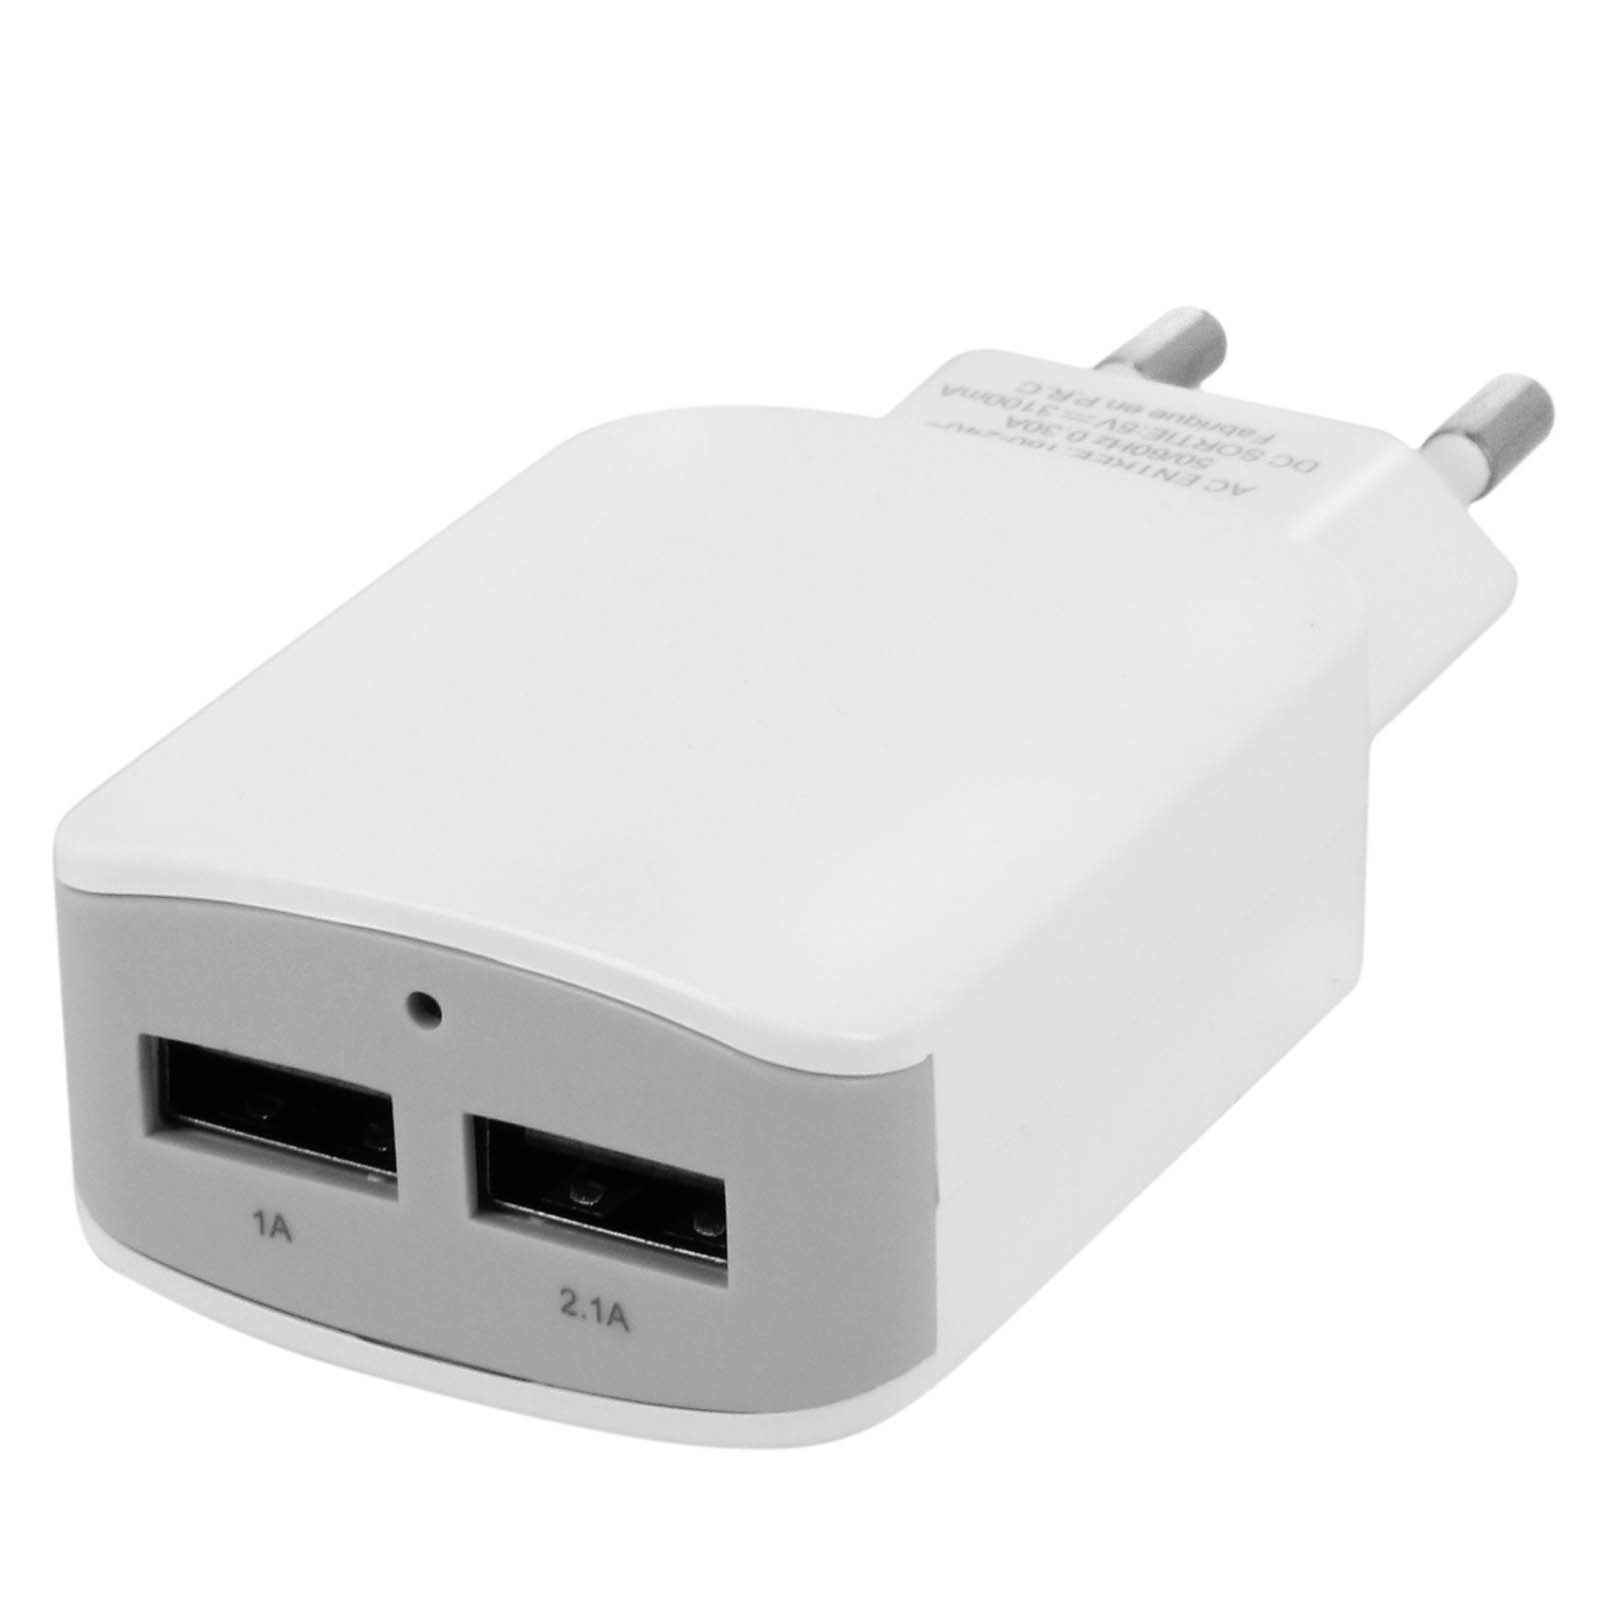 AVIZAR Netzteil, 3.1A USB Wand-Ladegerät Weiß Netzteile Universal